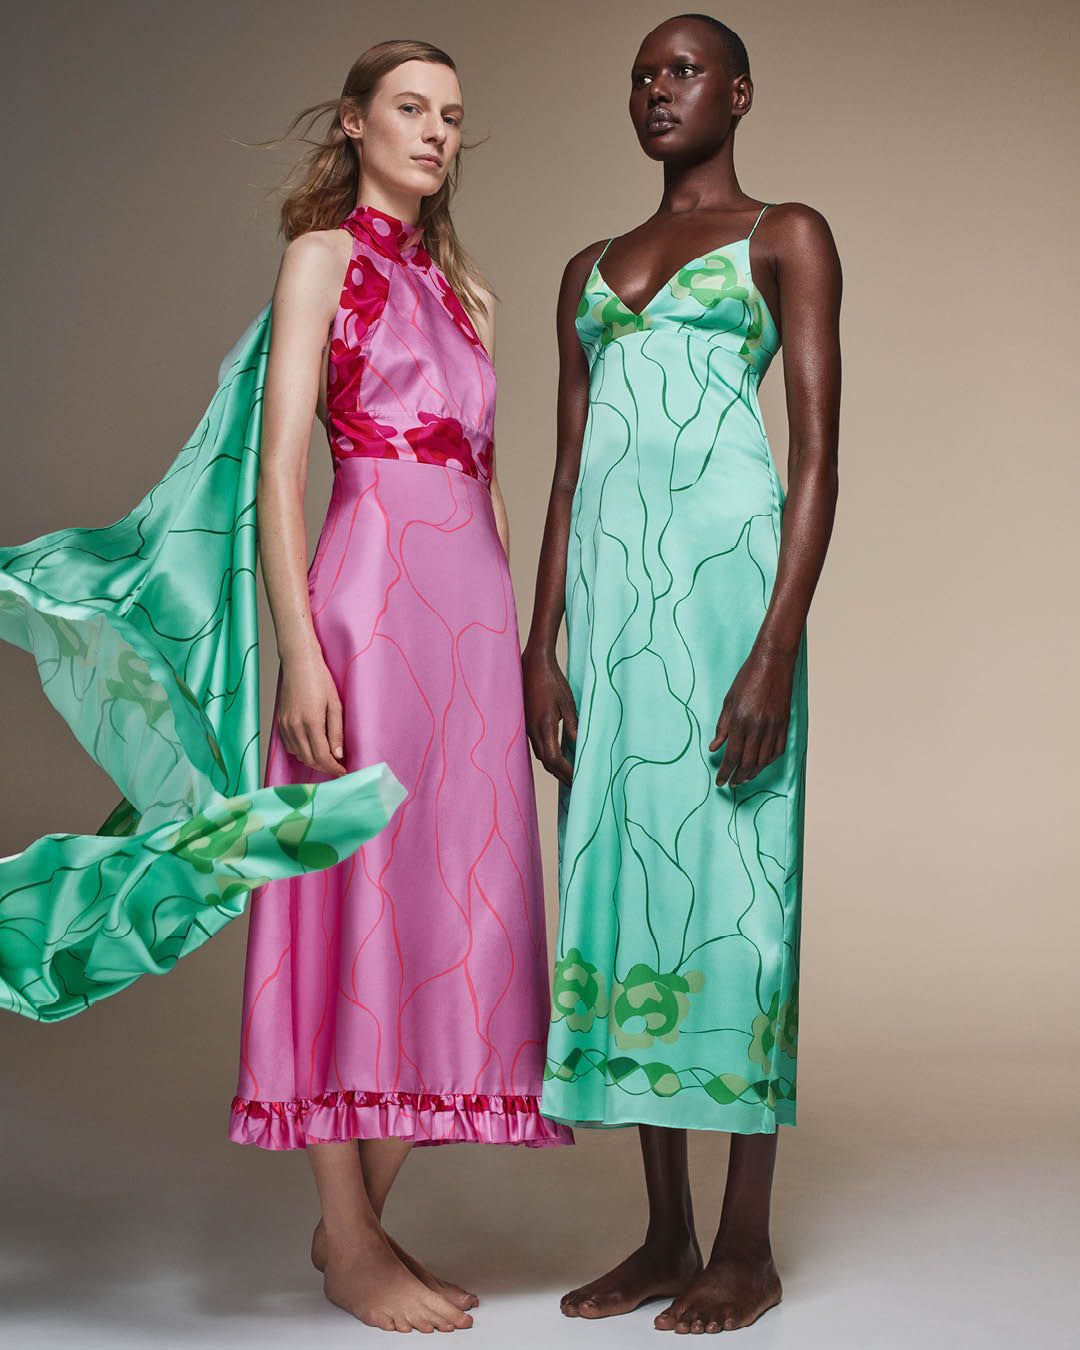 Julia Nobis wearing a pink silk halterneck dress standing with Ajak Deng wearing a green silk dress